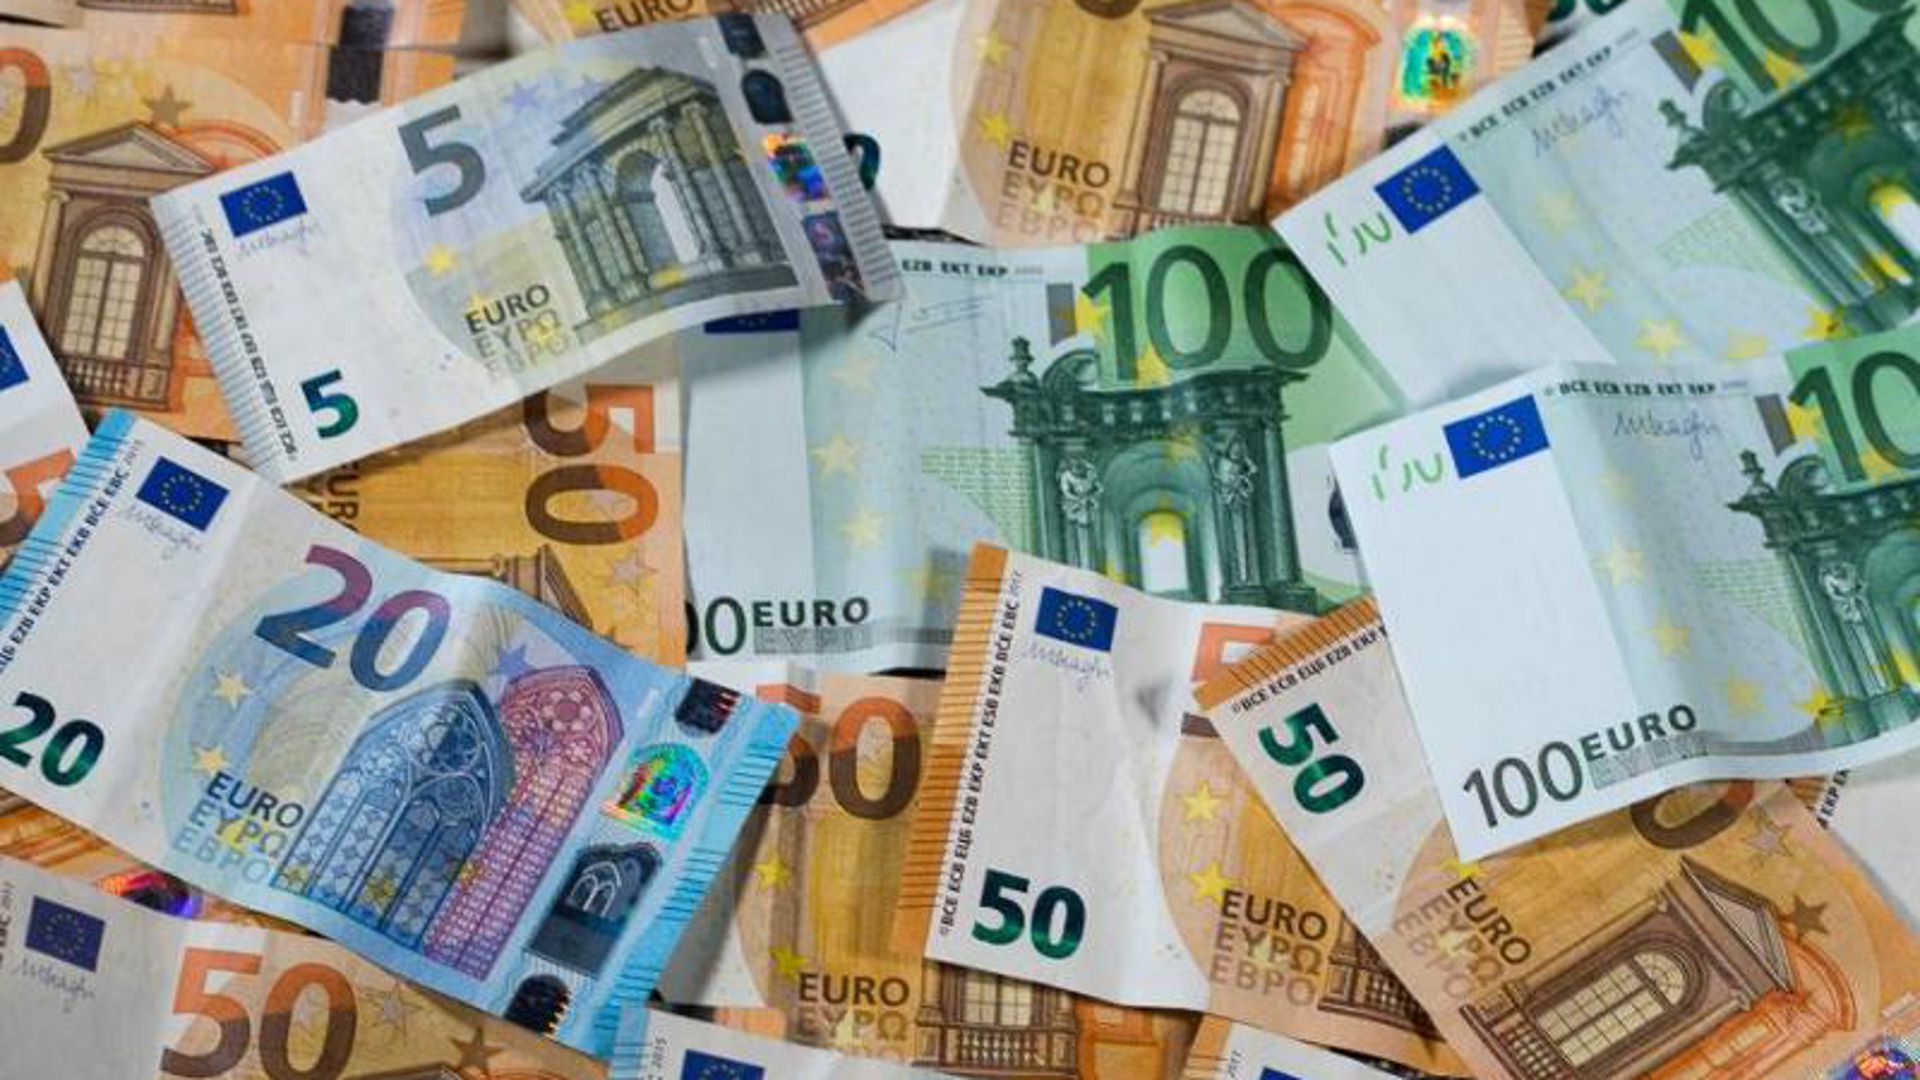 Verschiedene Euro-Geldscheine liegen auf einem Tisch